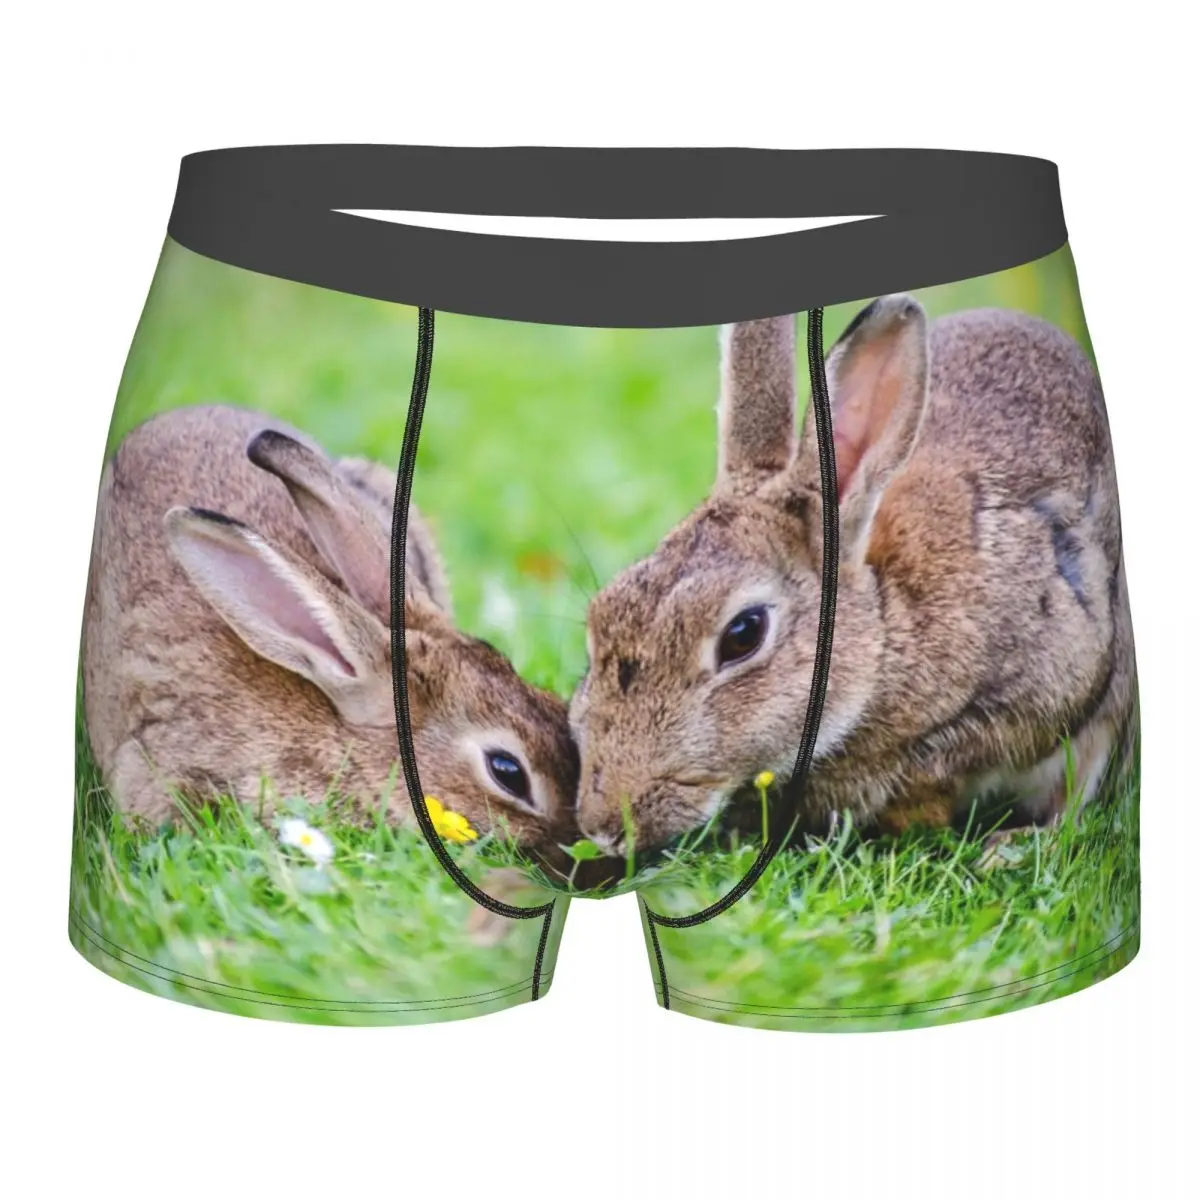 Boxershorts Men Comforable Panties Set Two Rabbits On Grass Underwear Man Boxer